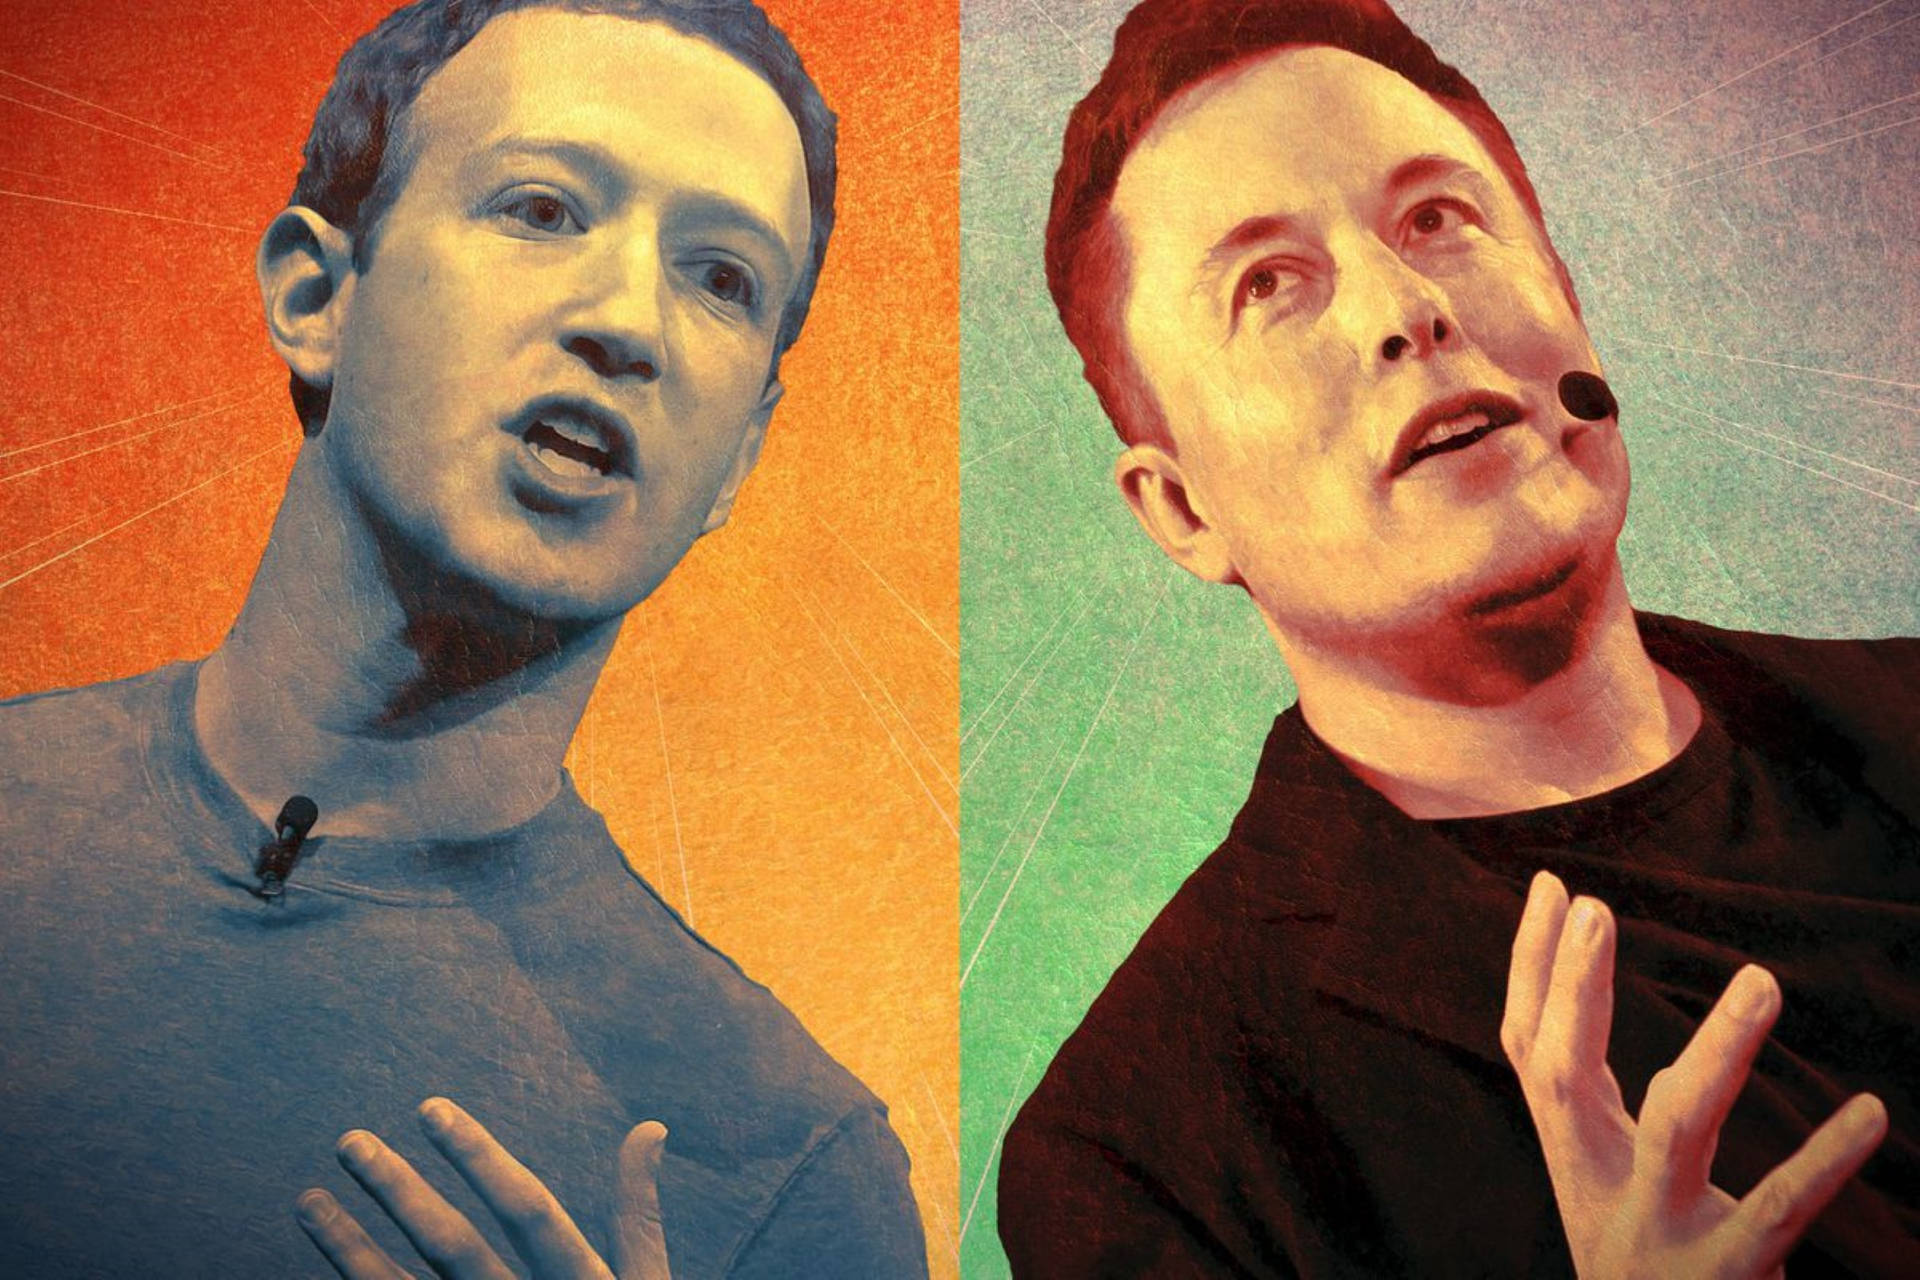 Mark Zuckerberg And Elon Musk